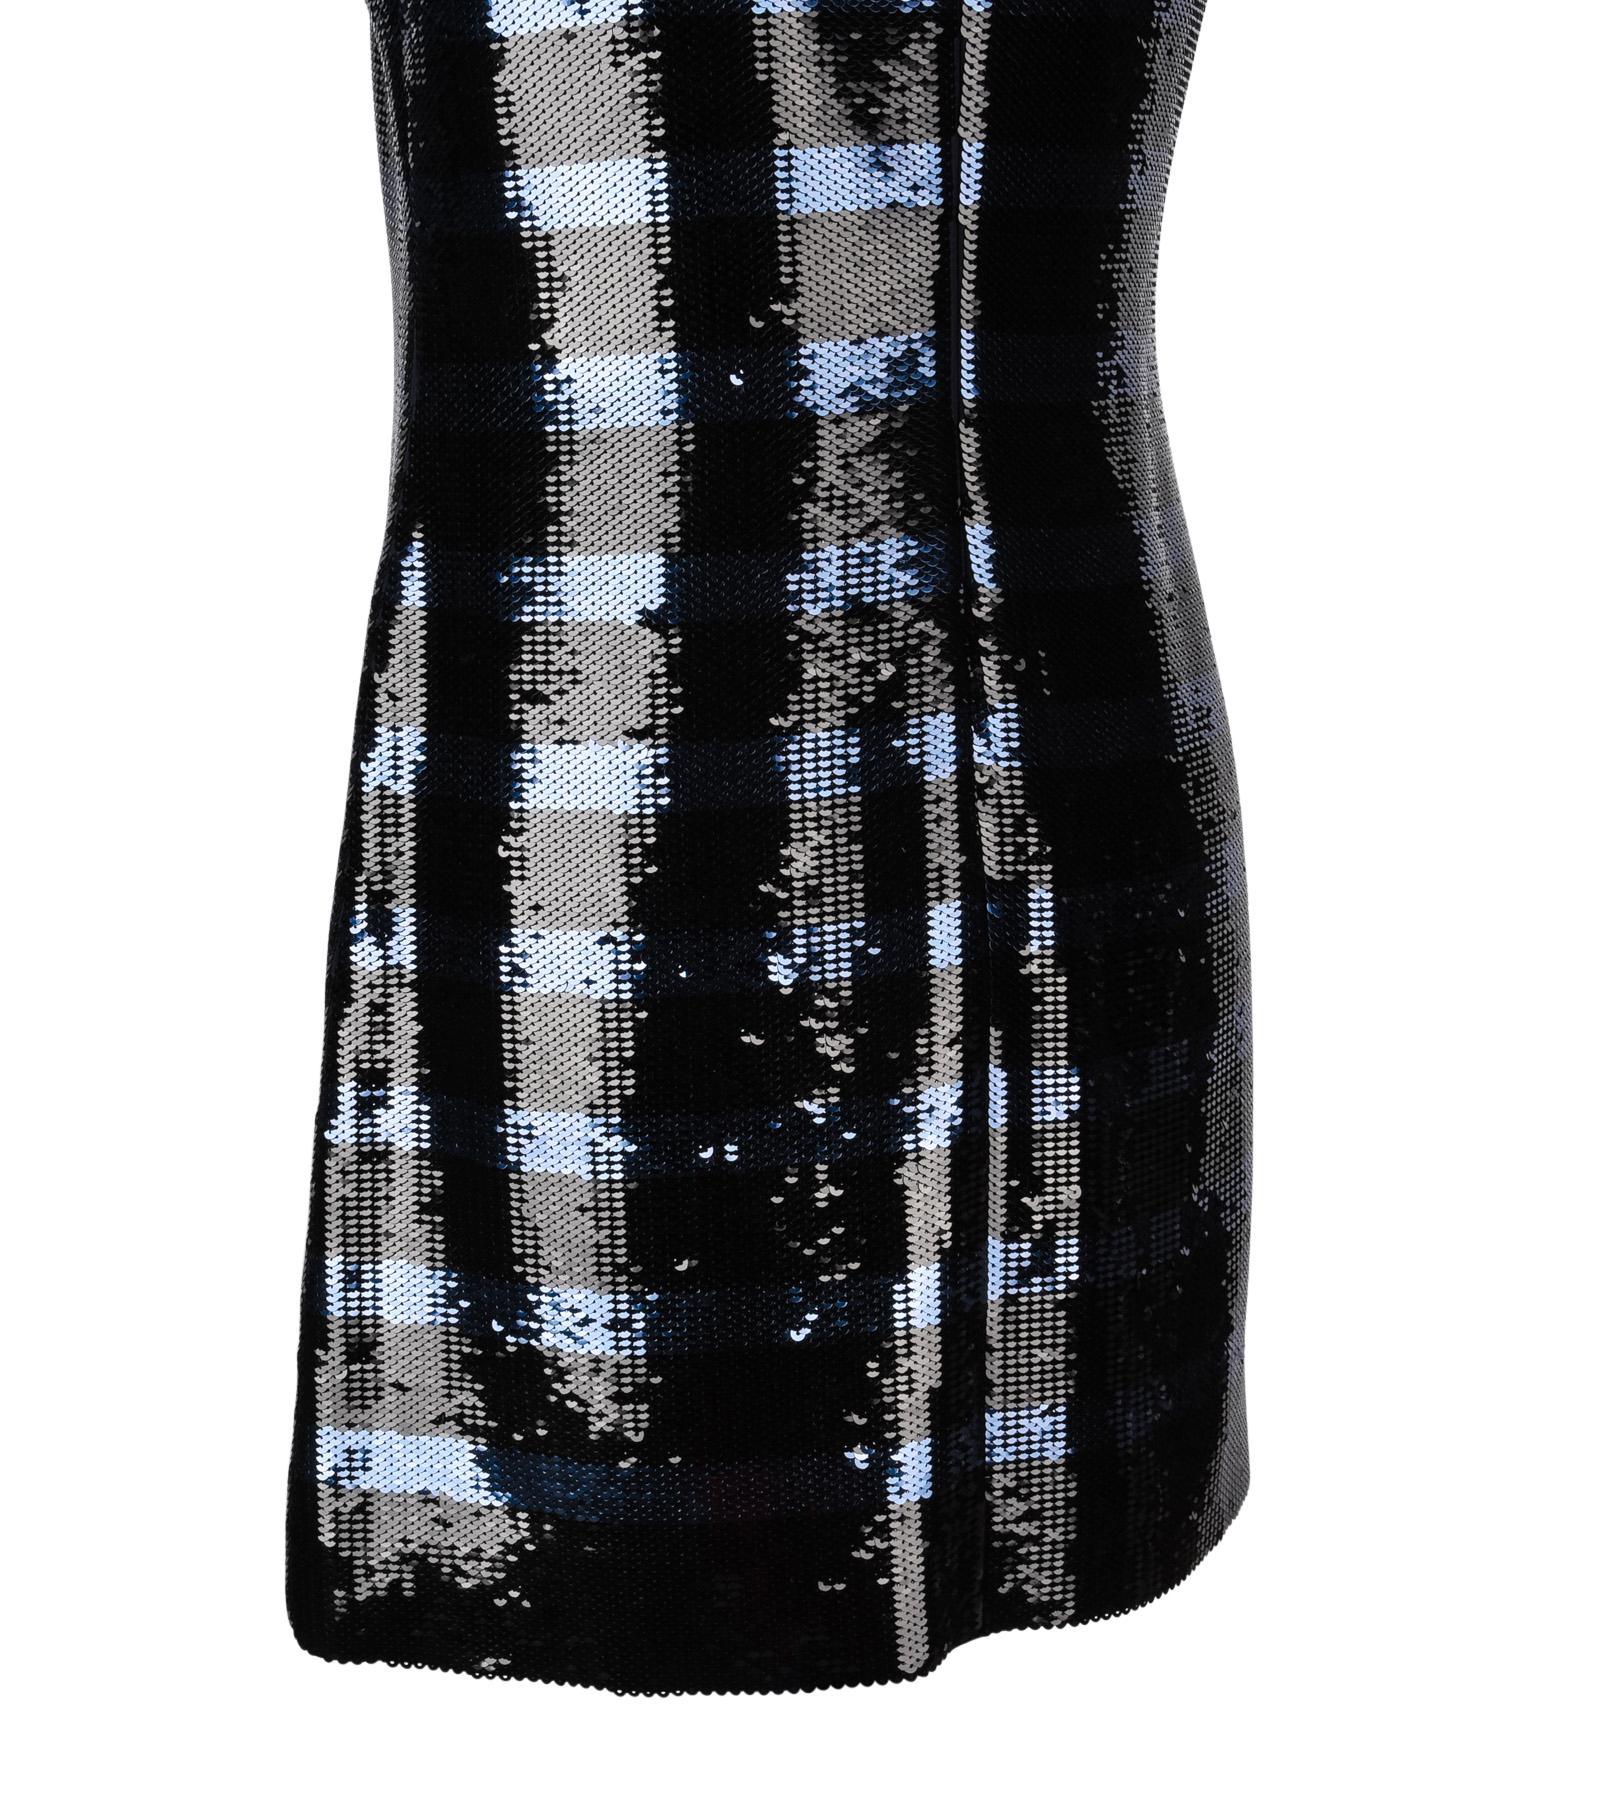 Christian Dior Dress Striped Sequin Embellished Navy / Black 6 5